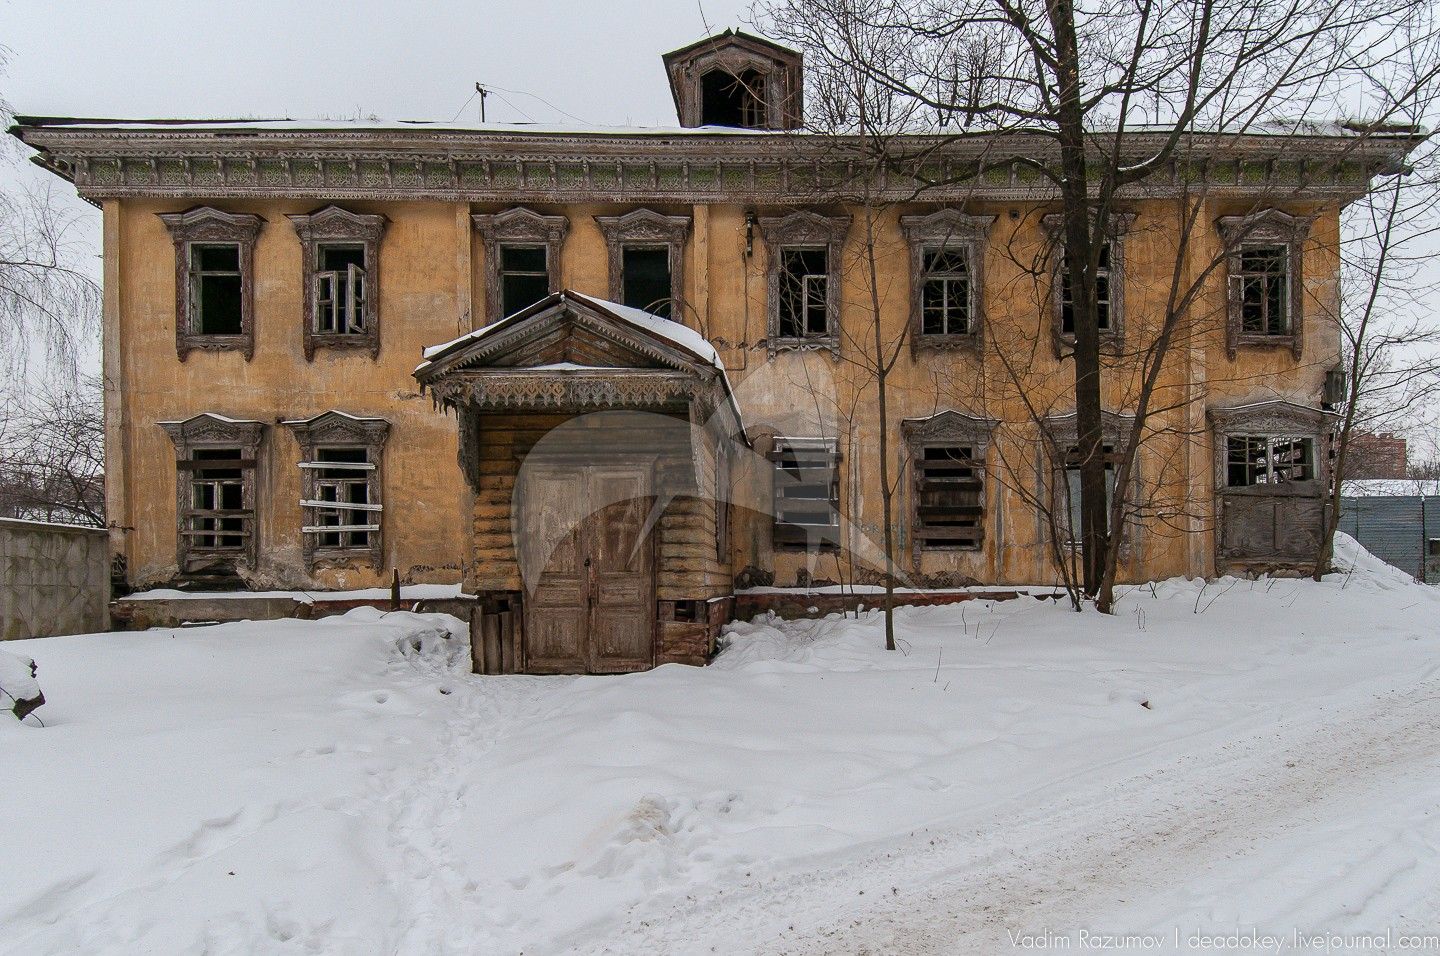 Дом управляющего фабрикой, конец XIX в.